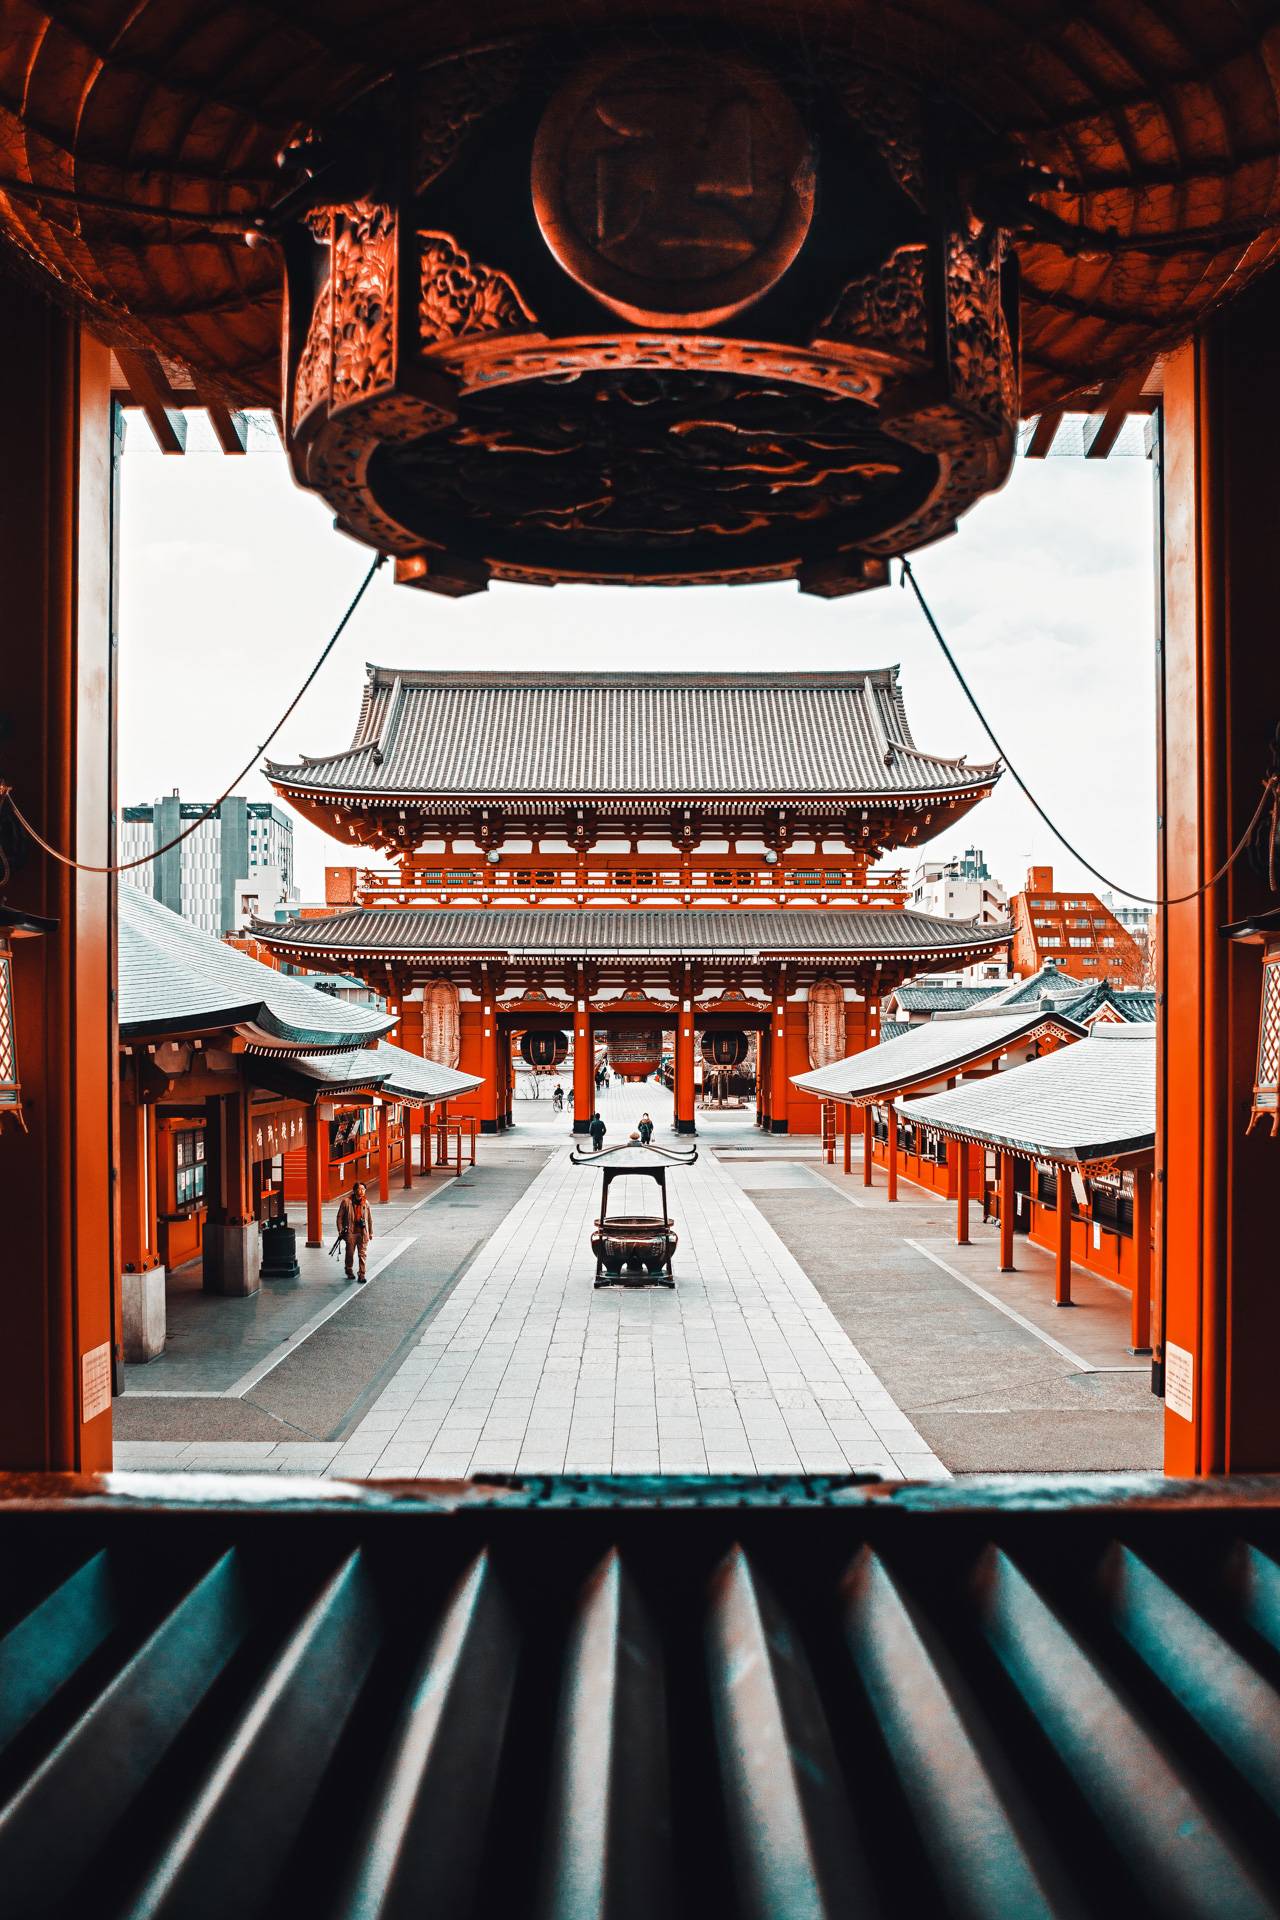 Traveling Japan: Day 2: Visiting Sensō-ji